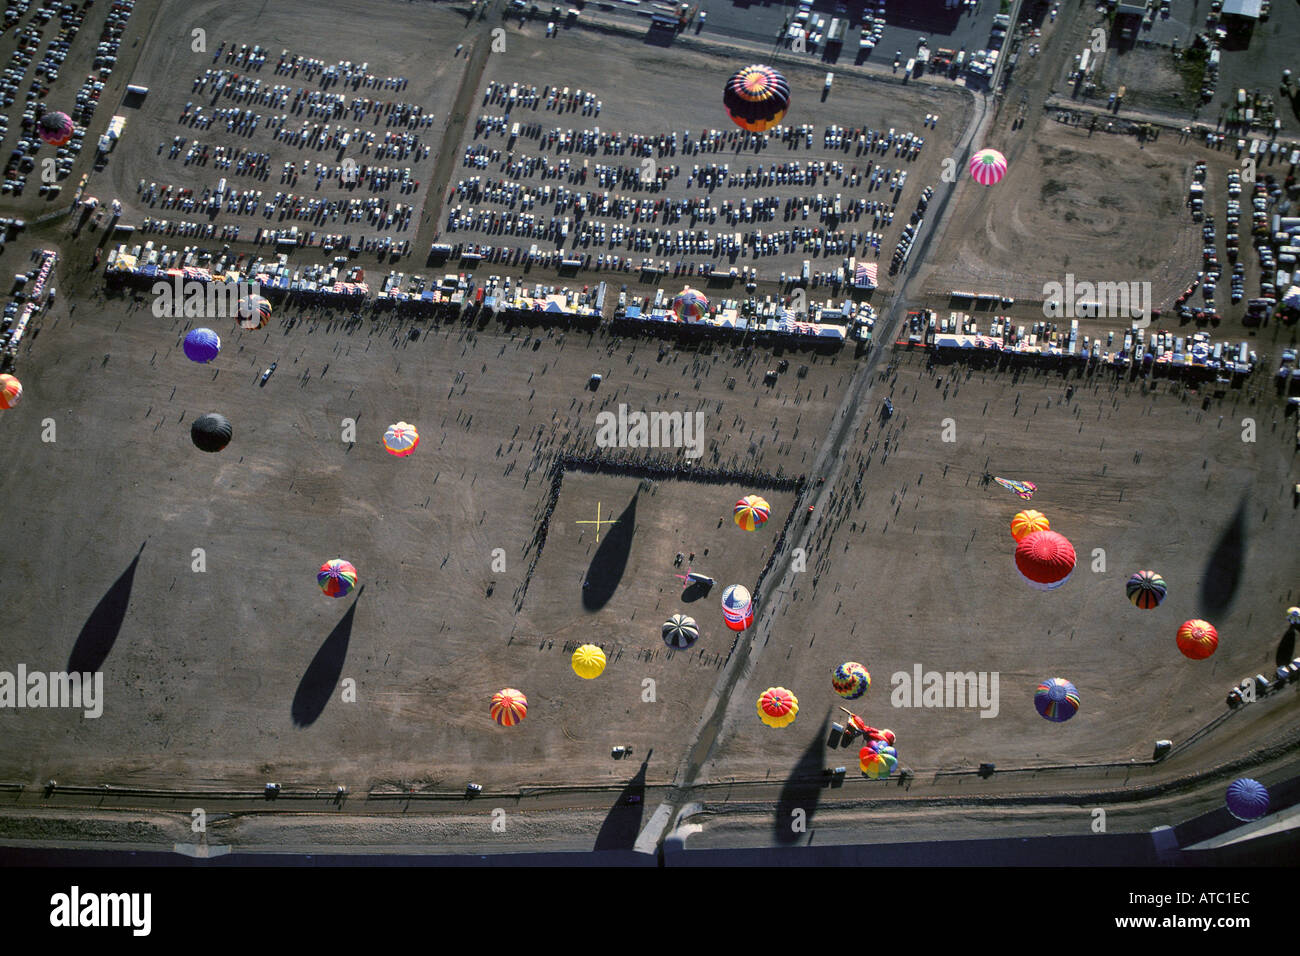 Aerial view of Albuquerque New Mexico balloon festival Stock Photo